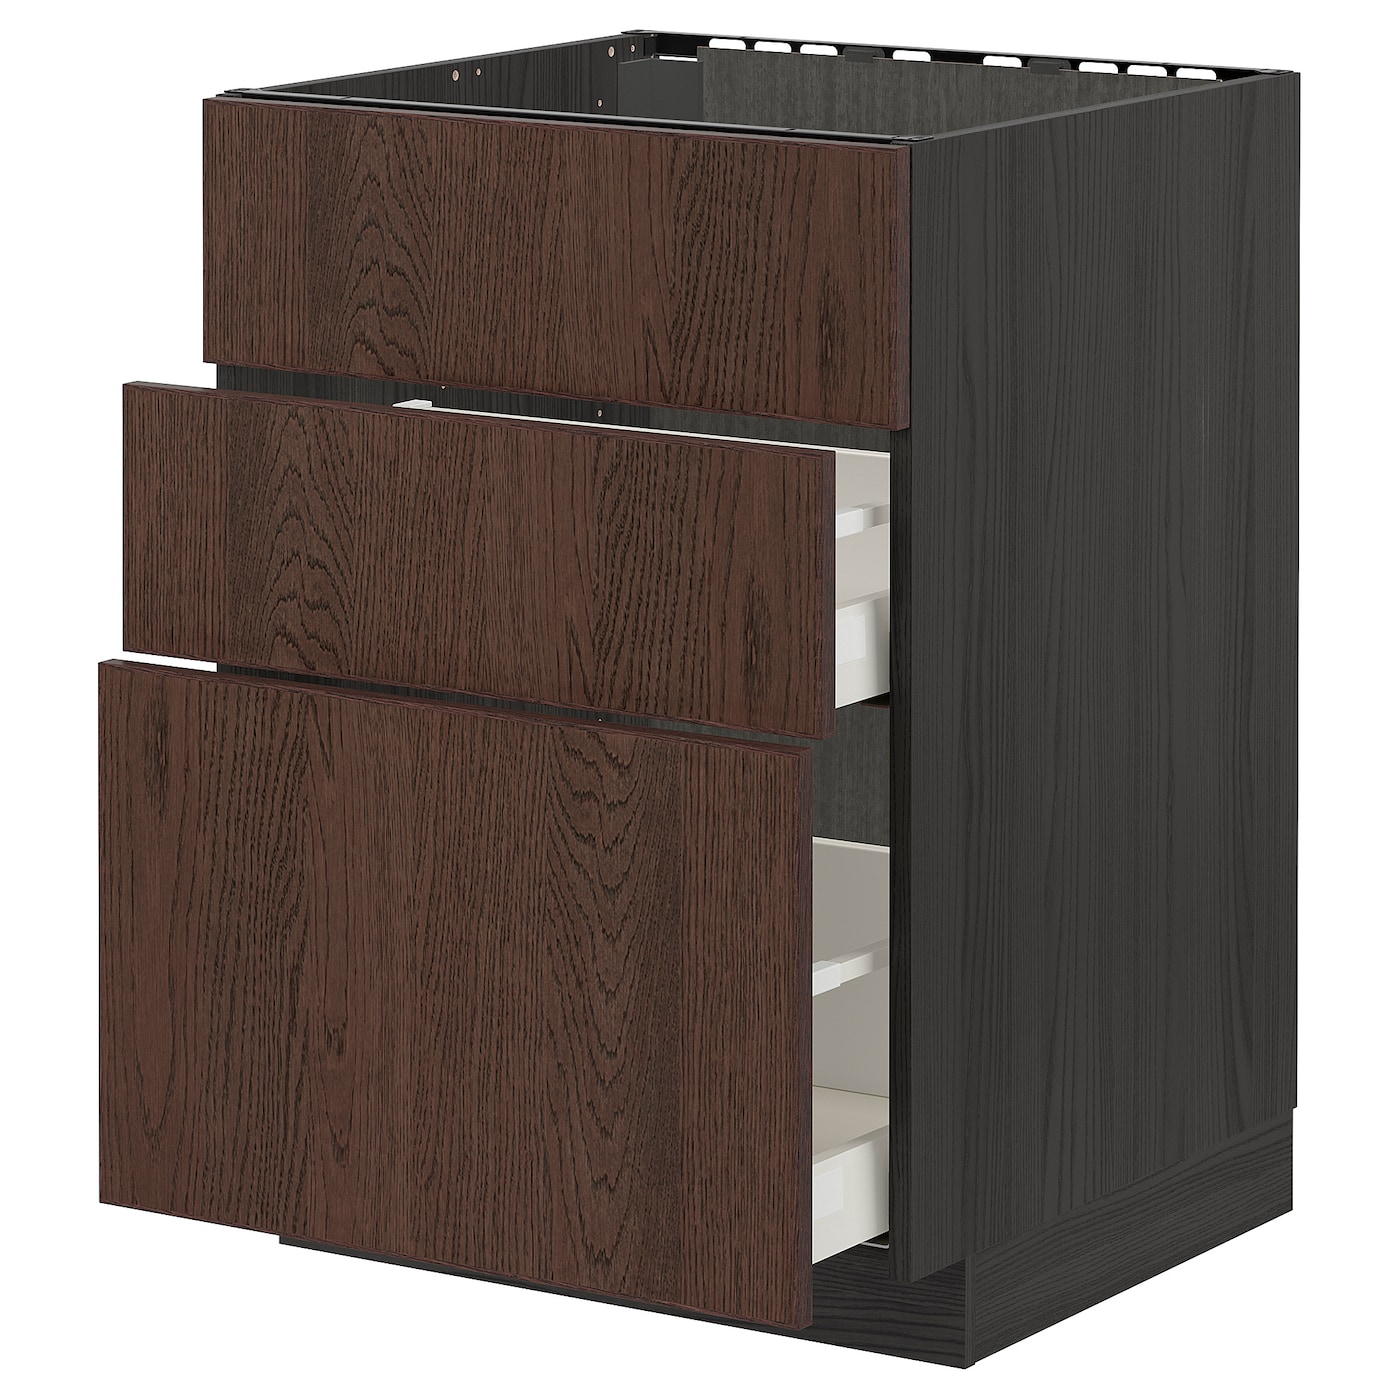 Напольный кухонный шкаф  - IKEA METOD MAXIMERA, 88x61,6x60см, черный/коричневый, МЕТОД МАКСИМЕРА ИКЕА